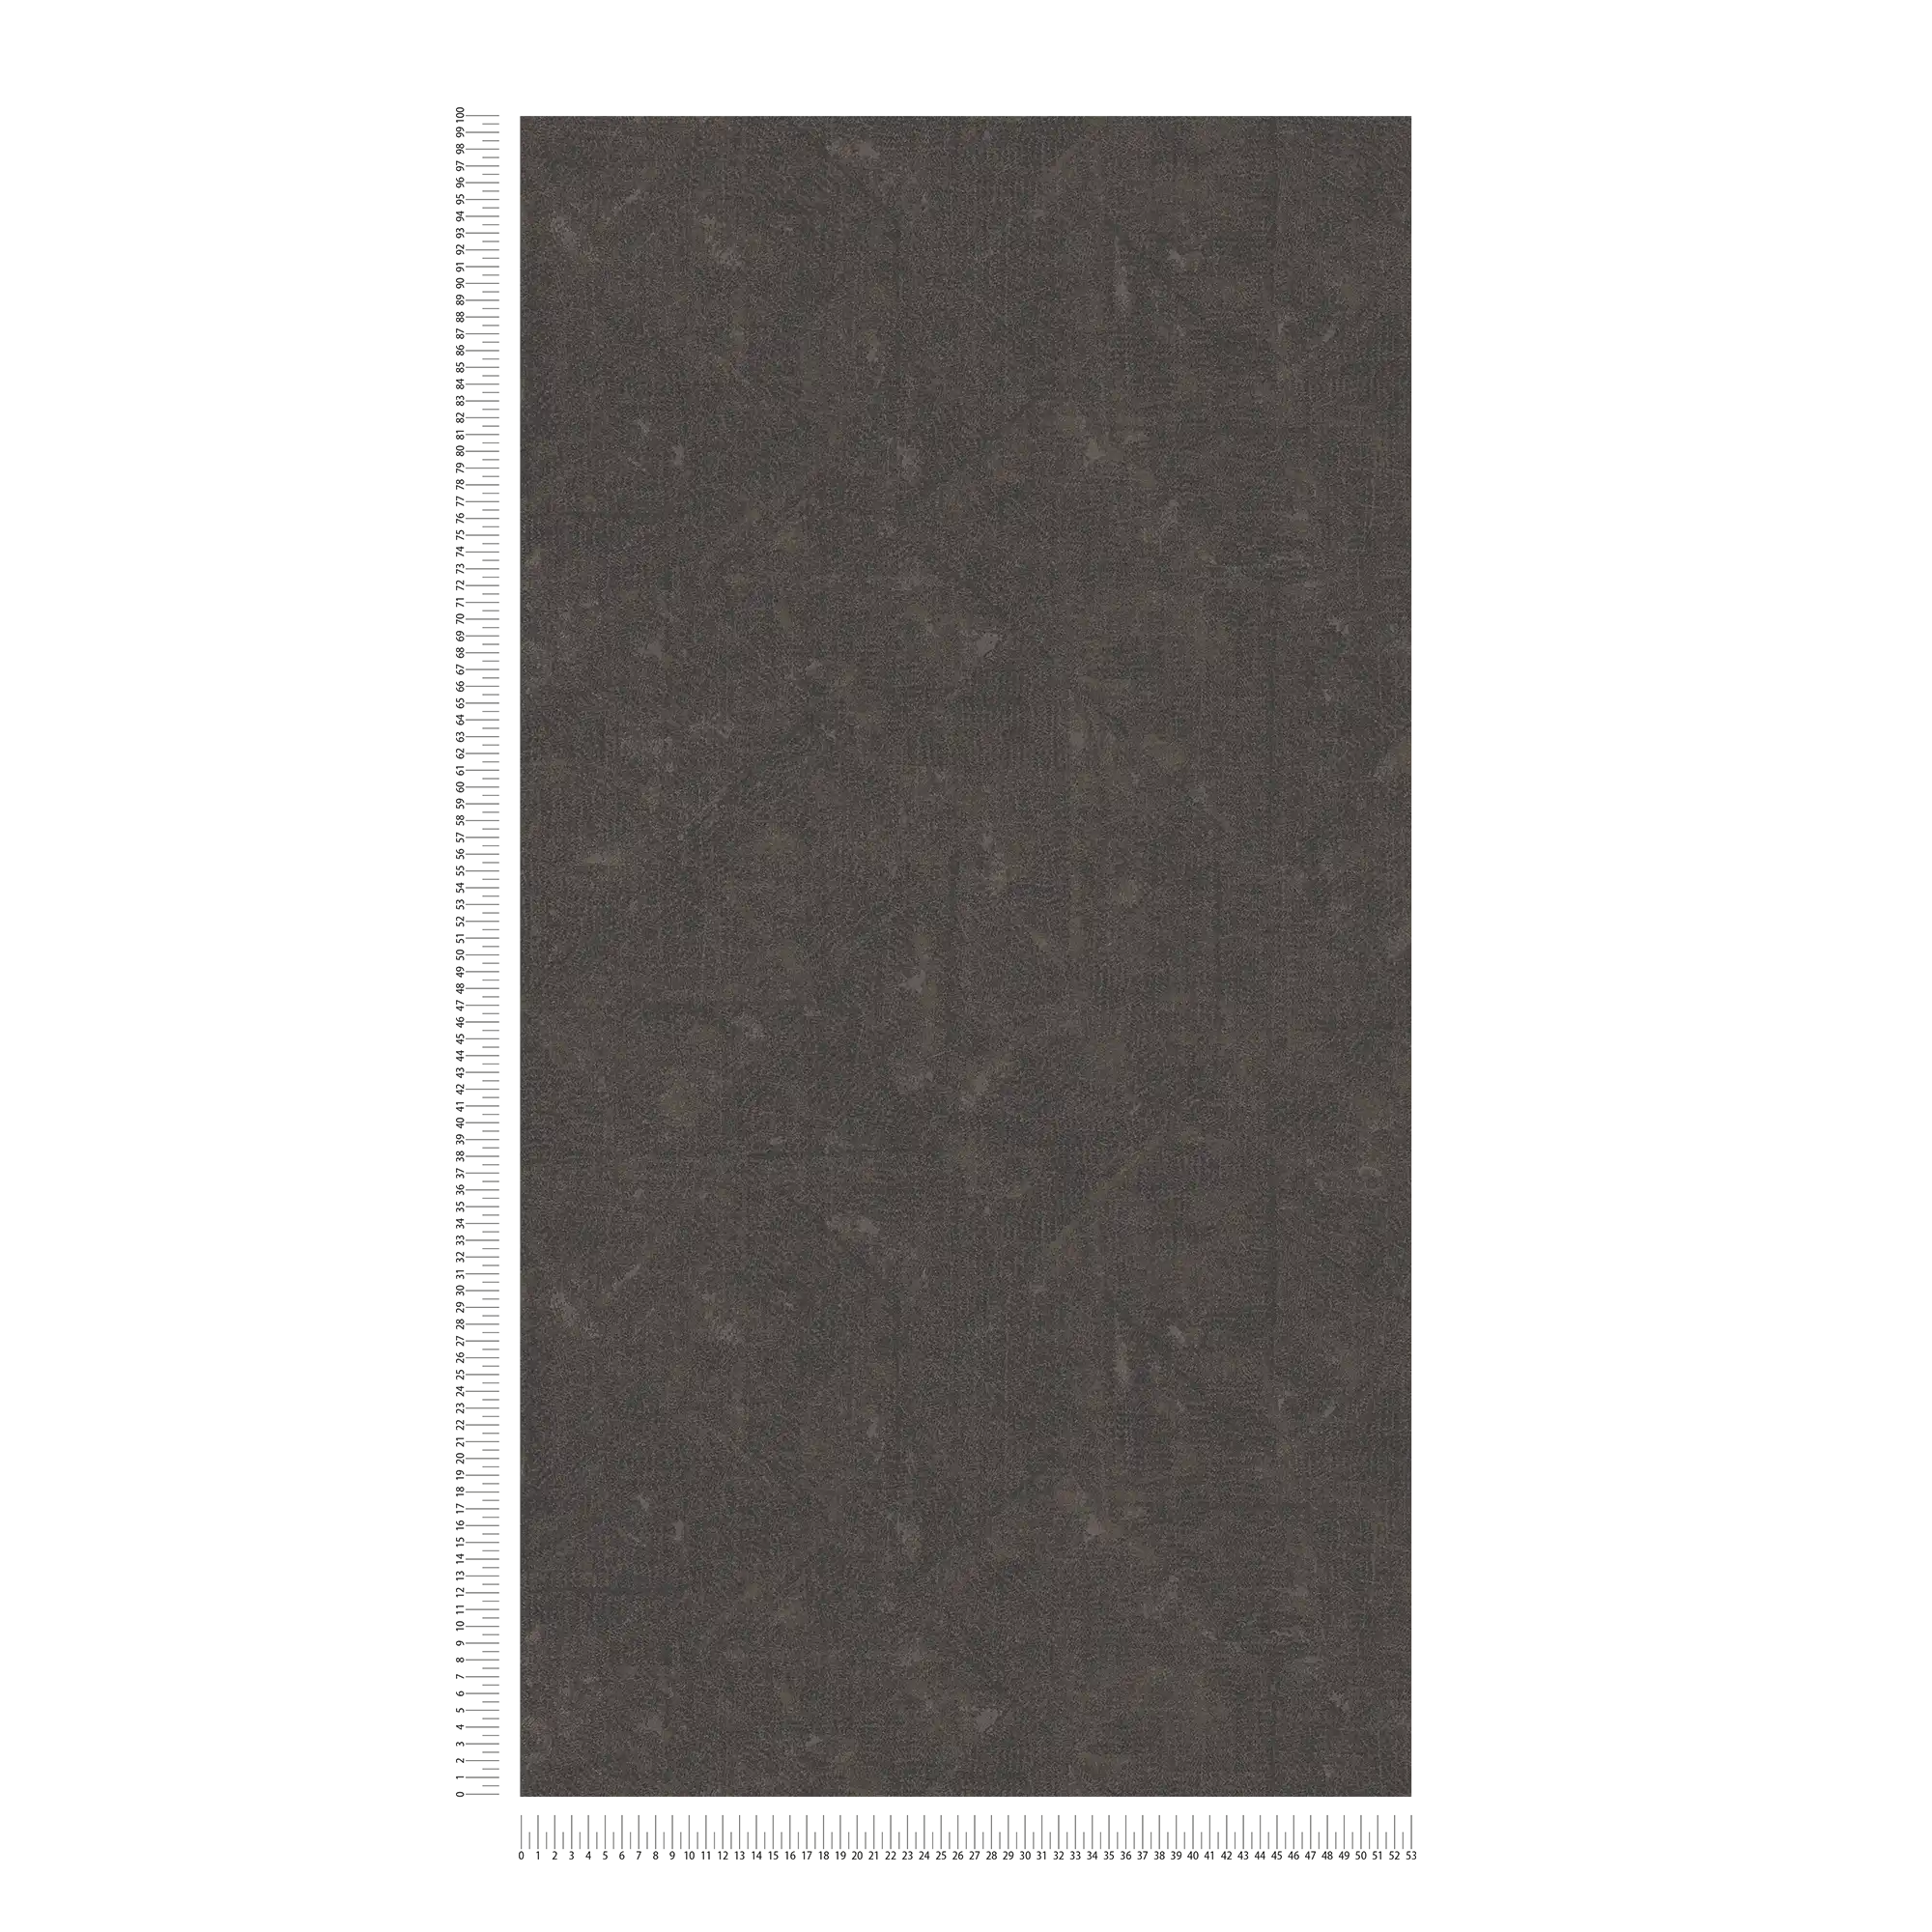             Papier peint intissé marron foncé à motifs subtils - marron, noir, bronze
        